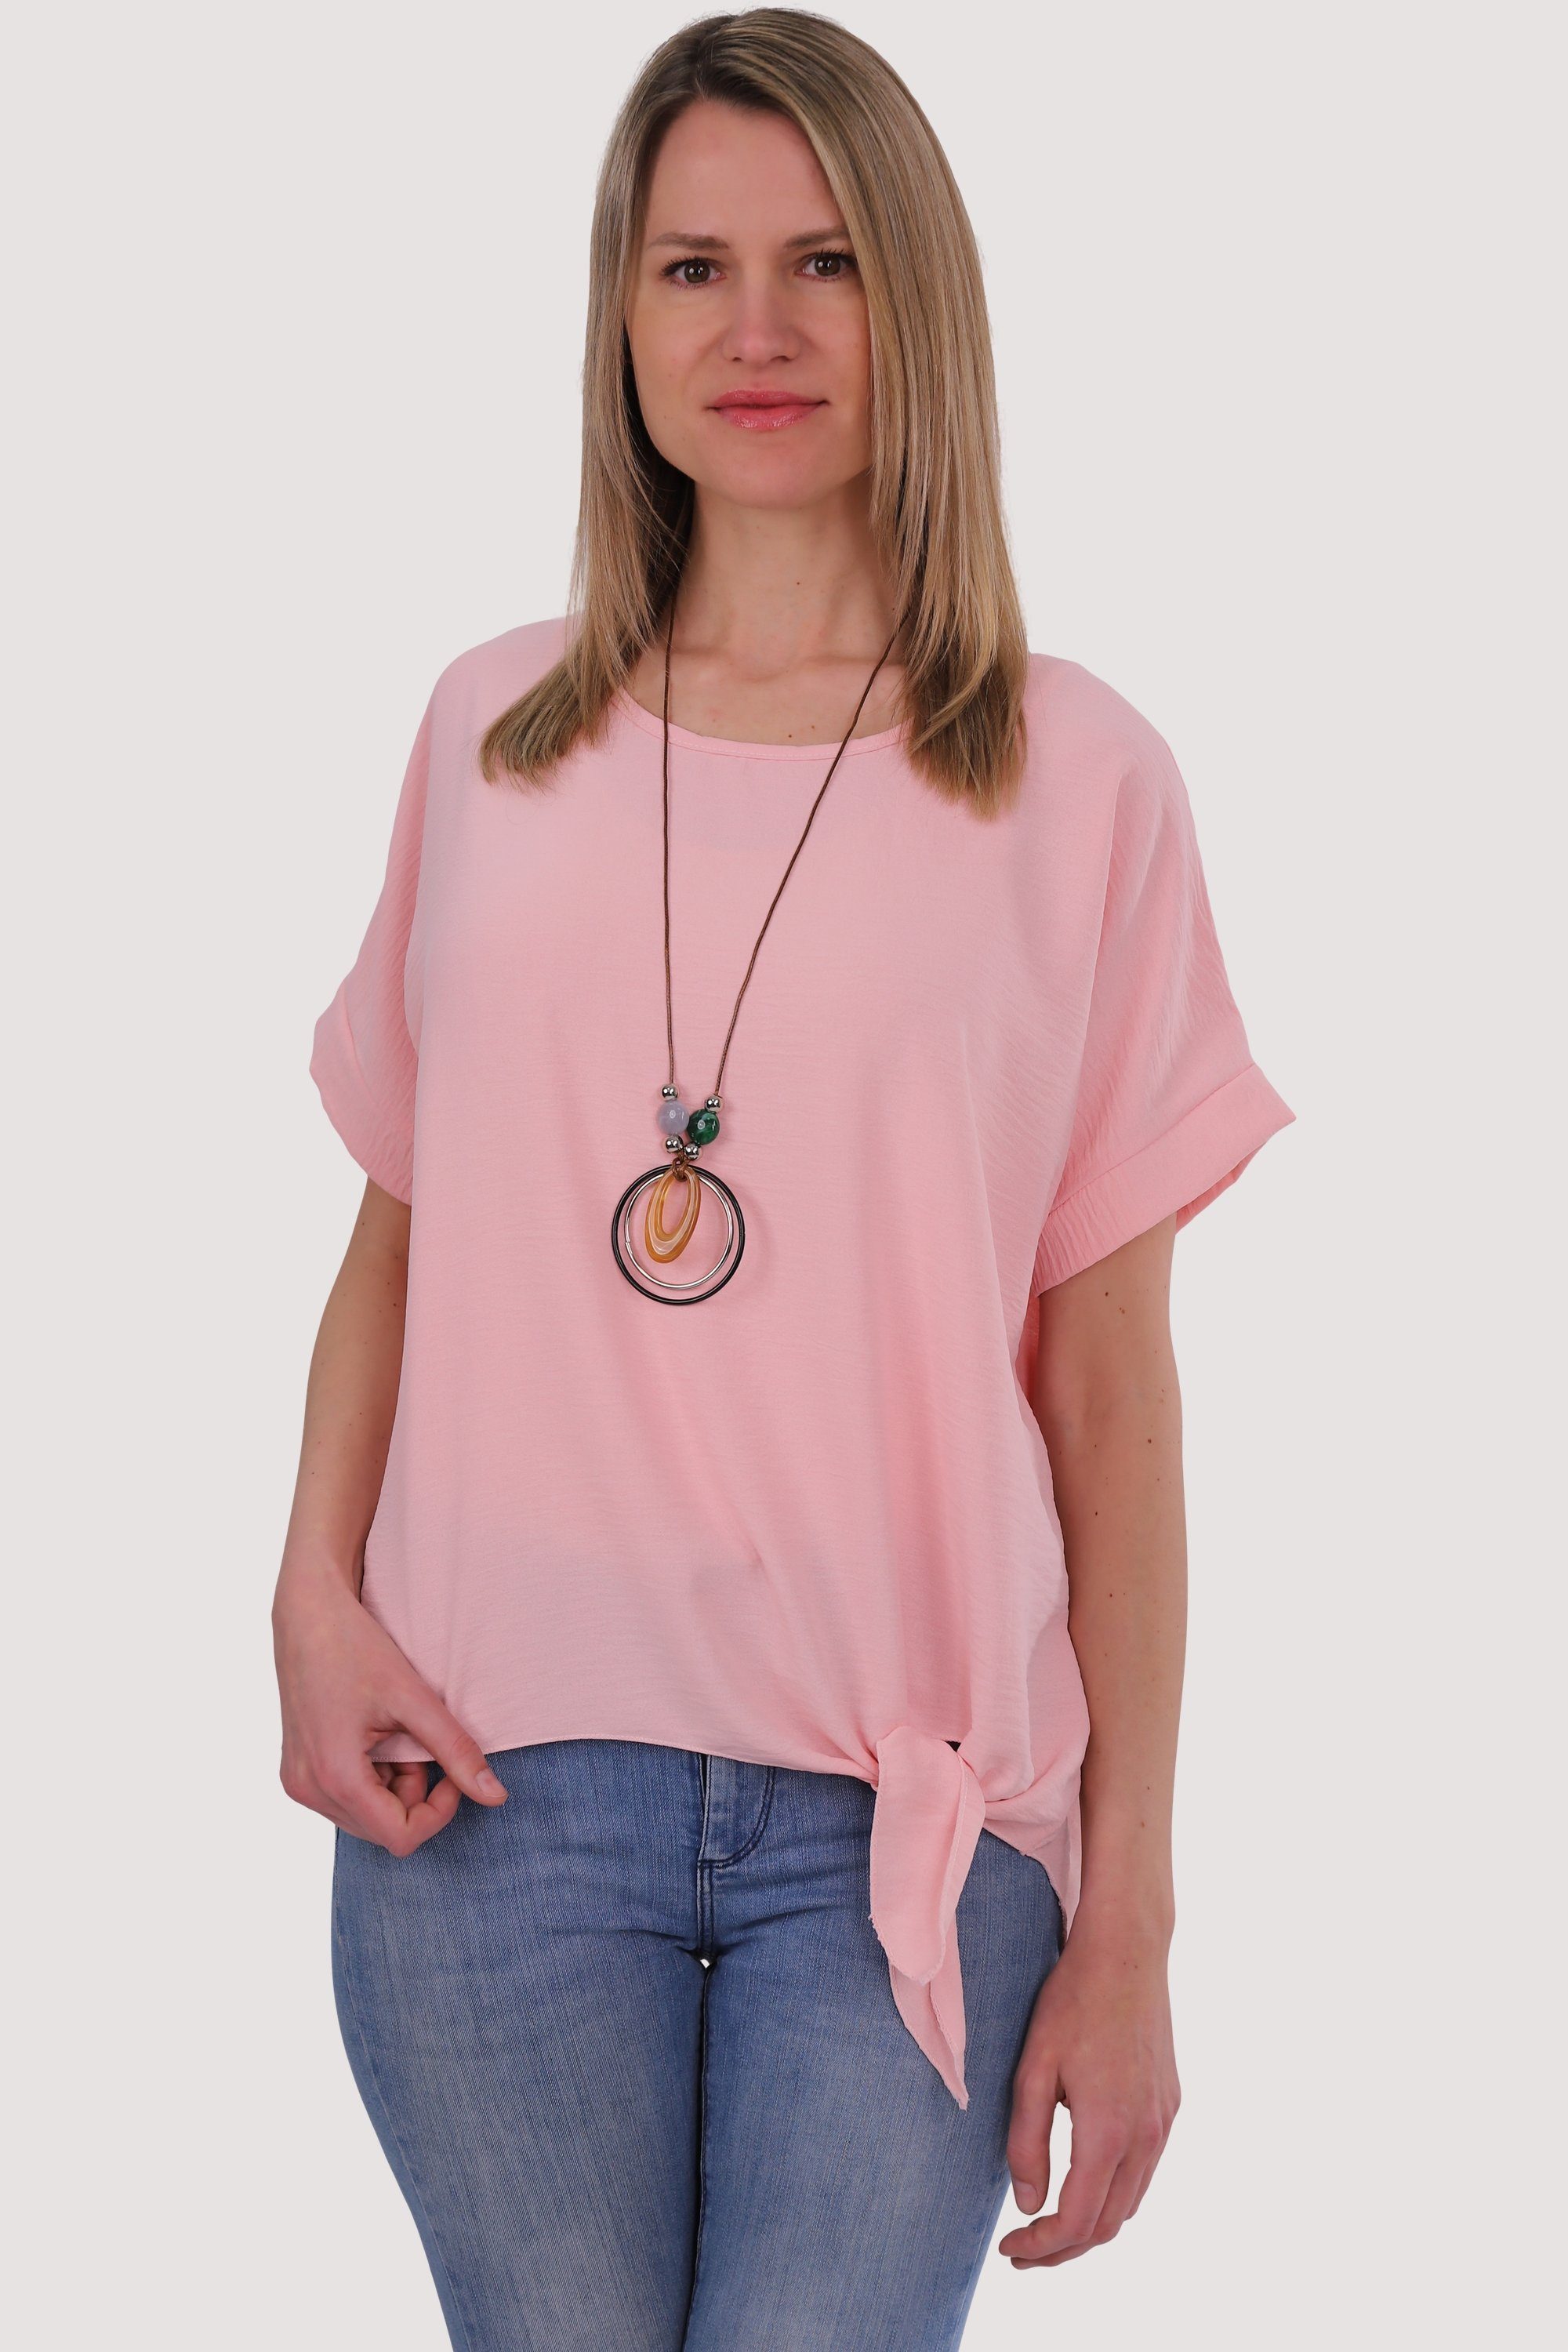 malito more than fashion Blusenshirt 10508 mit Bindeknoten und Kette Einheitsgröße rosa